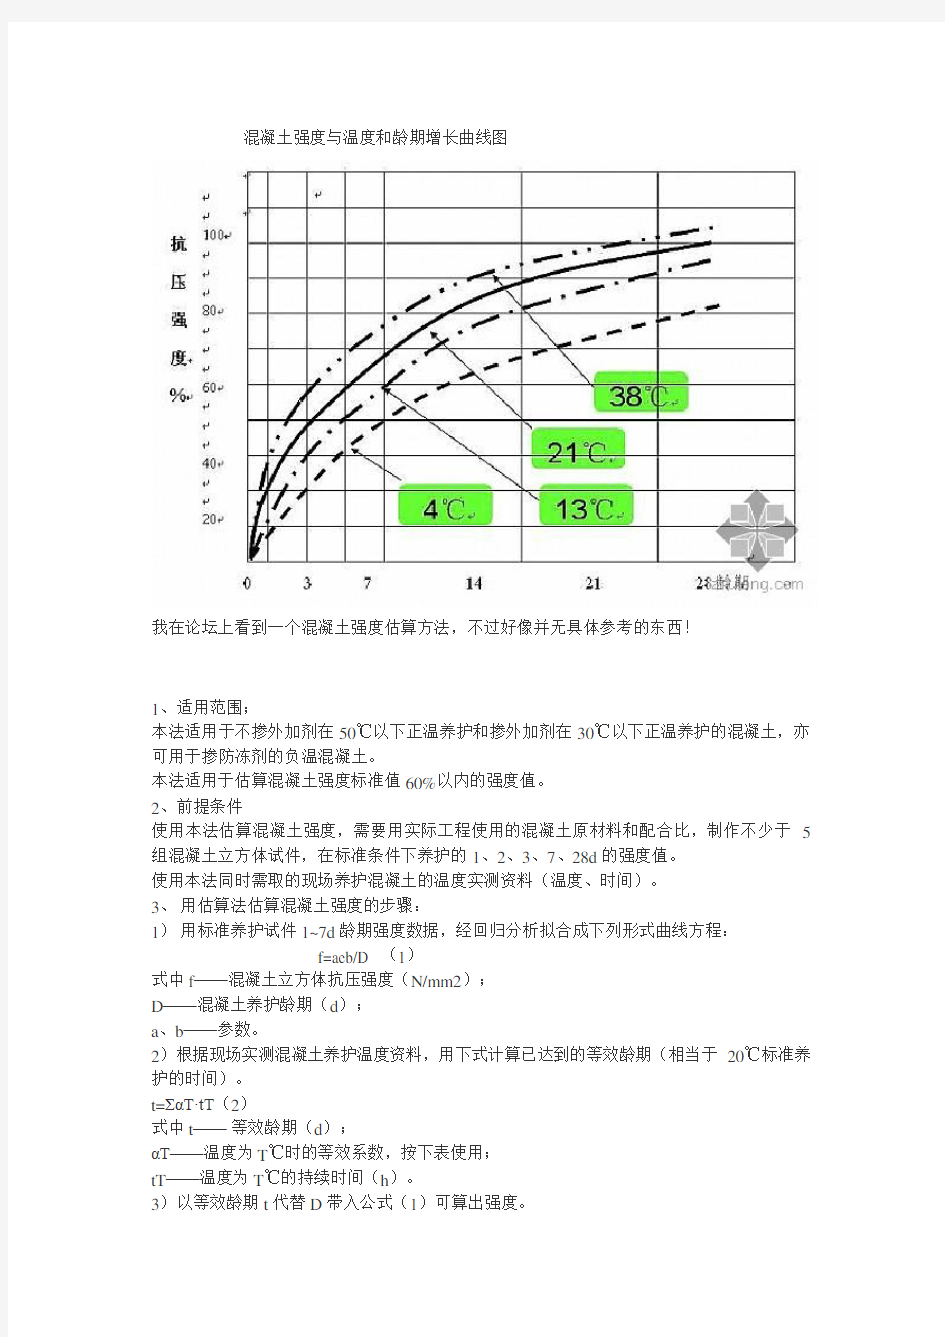 混凝土强度与温度和龄期增长曲线图.